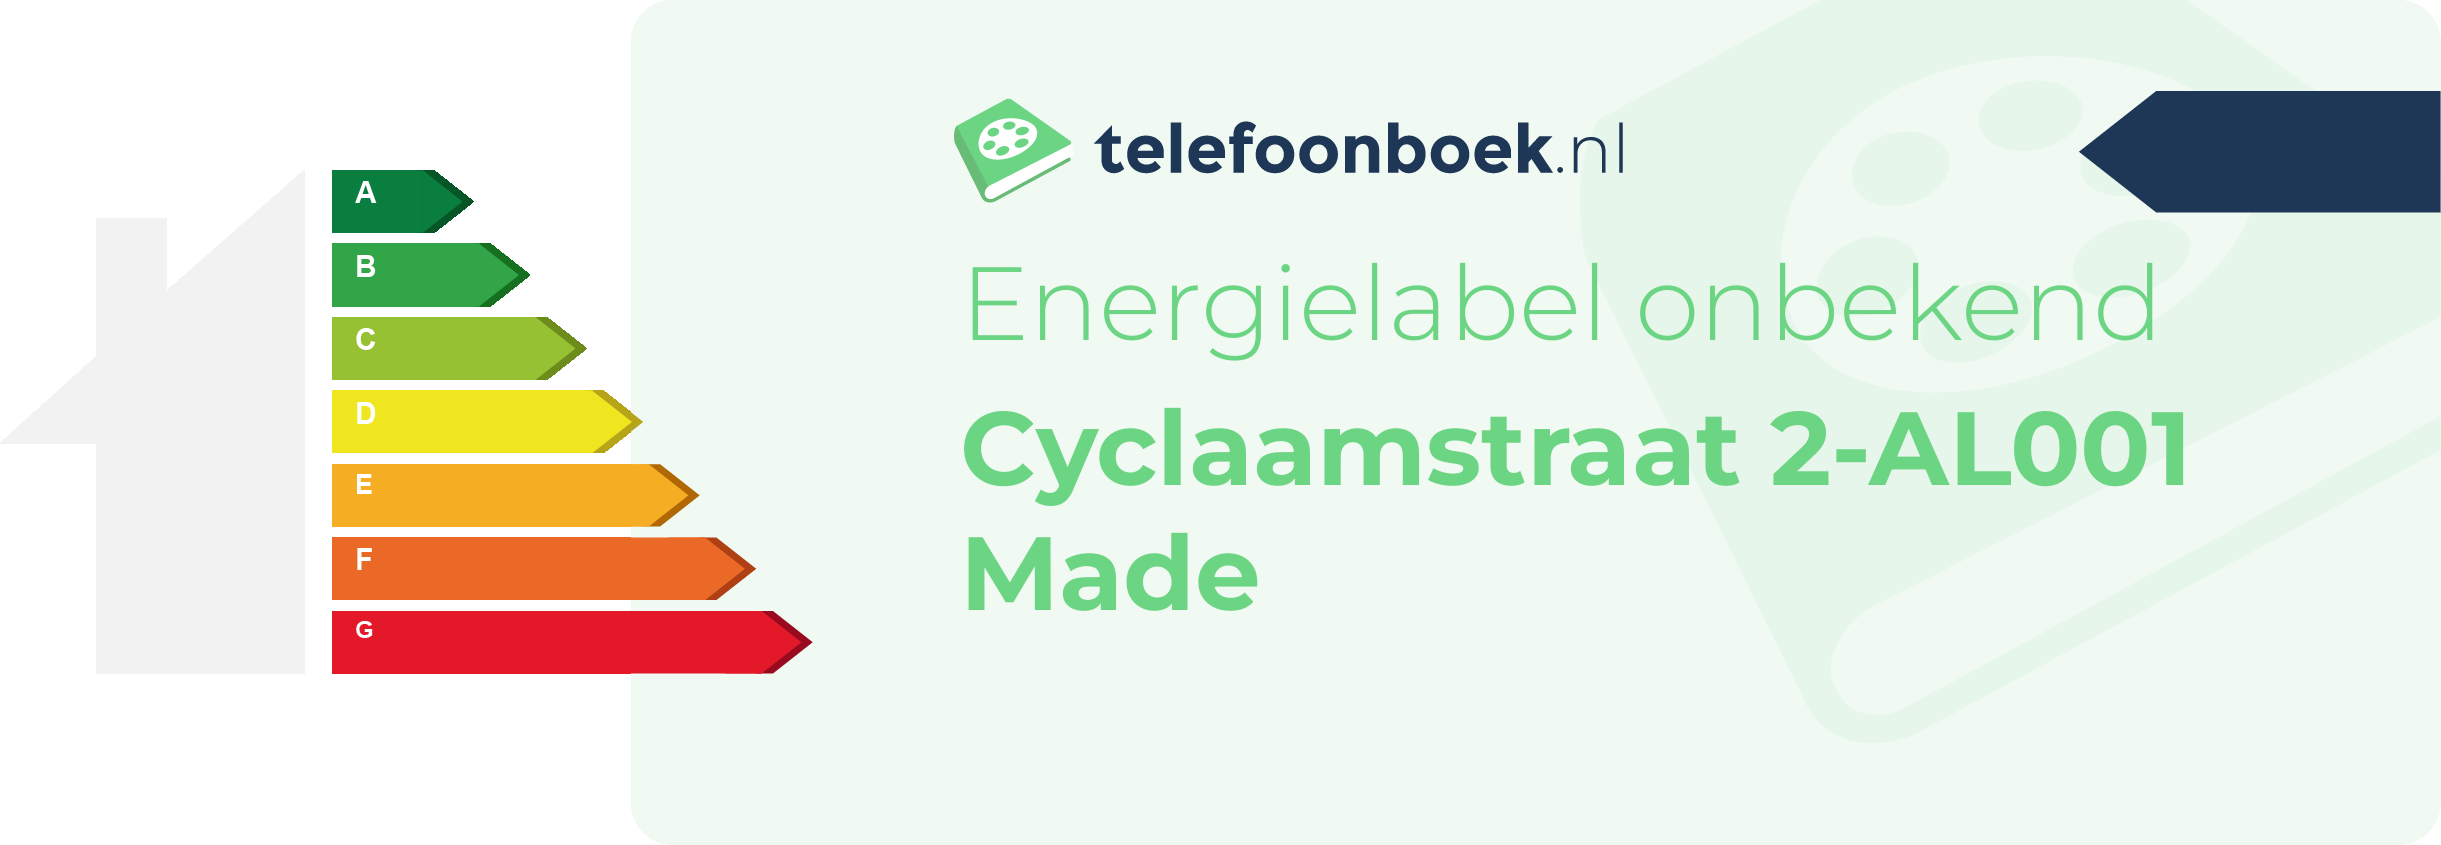 Energielabel Cyclaamstraat 2-AL001 Made